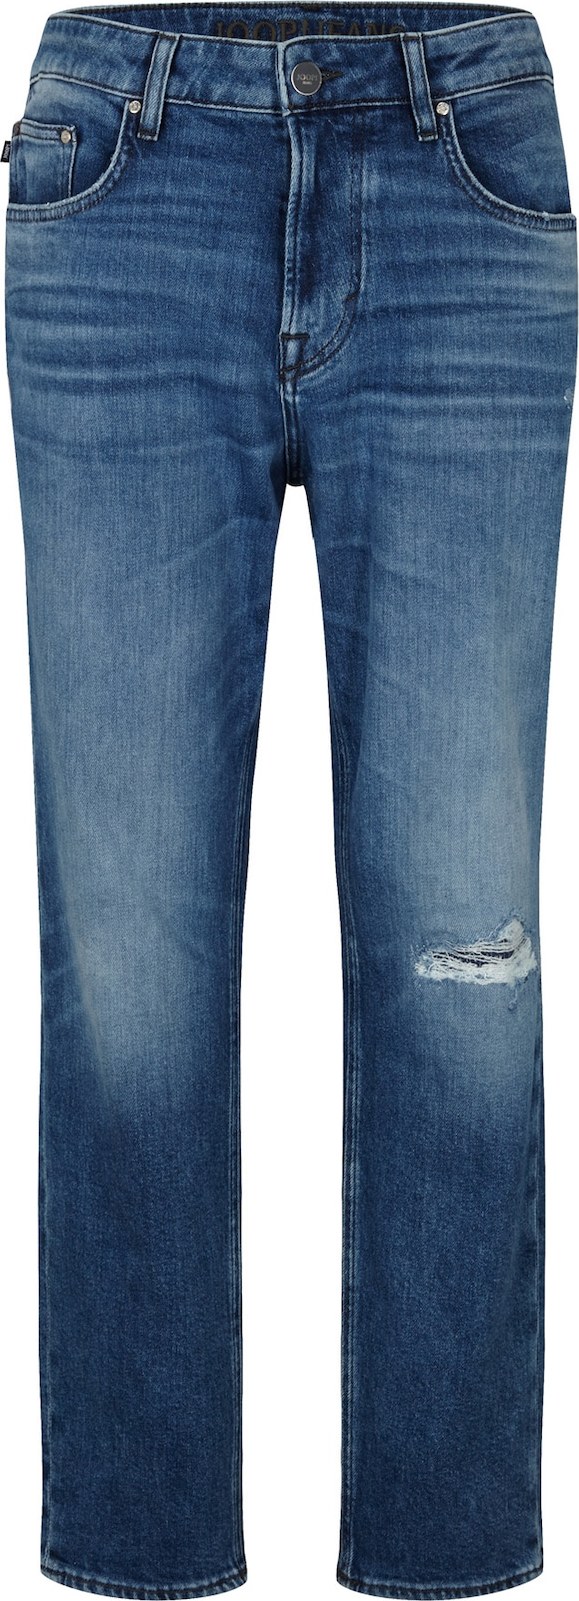 JOOP! Jeans Džíny 'Re-Flex' modrá džínovina